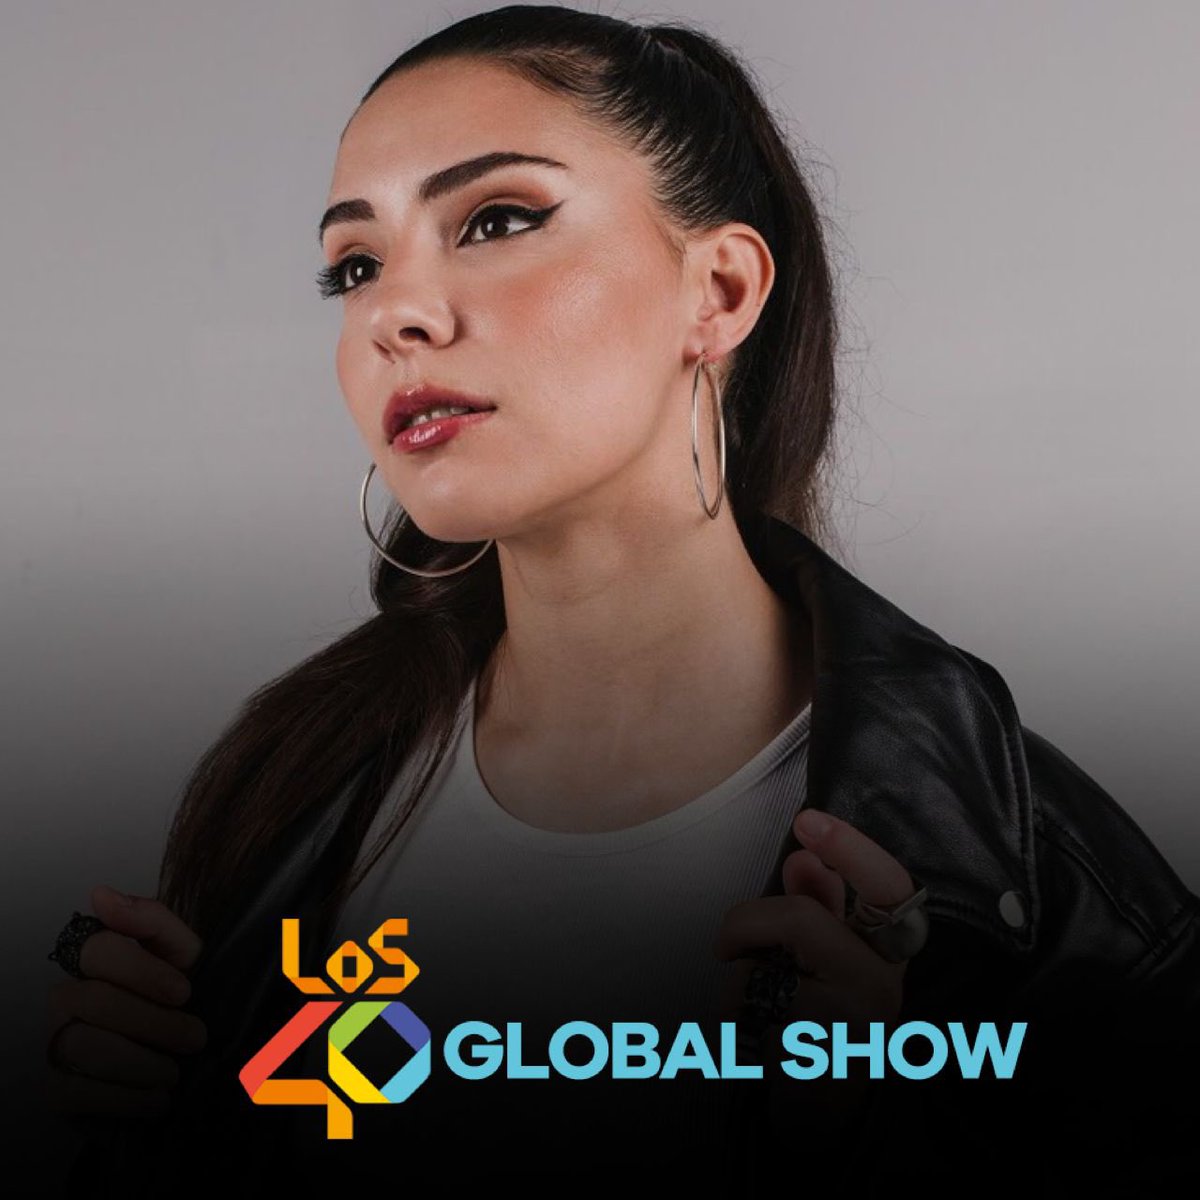 Este domingo en #40GlobalShow449 escucharemos en España y Latinoamérica a @Farga_oficial con TODO MENOS TU EX ✨🎶 @40GlobalShow